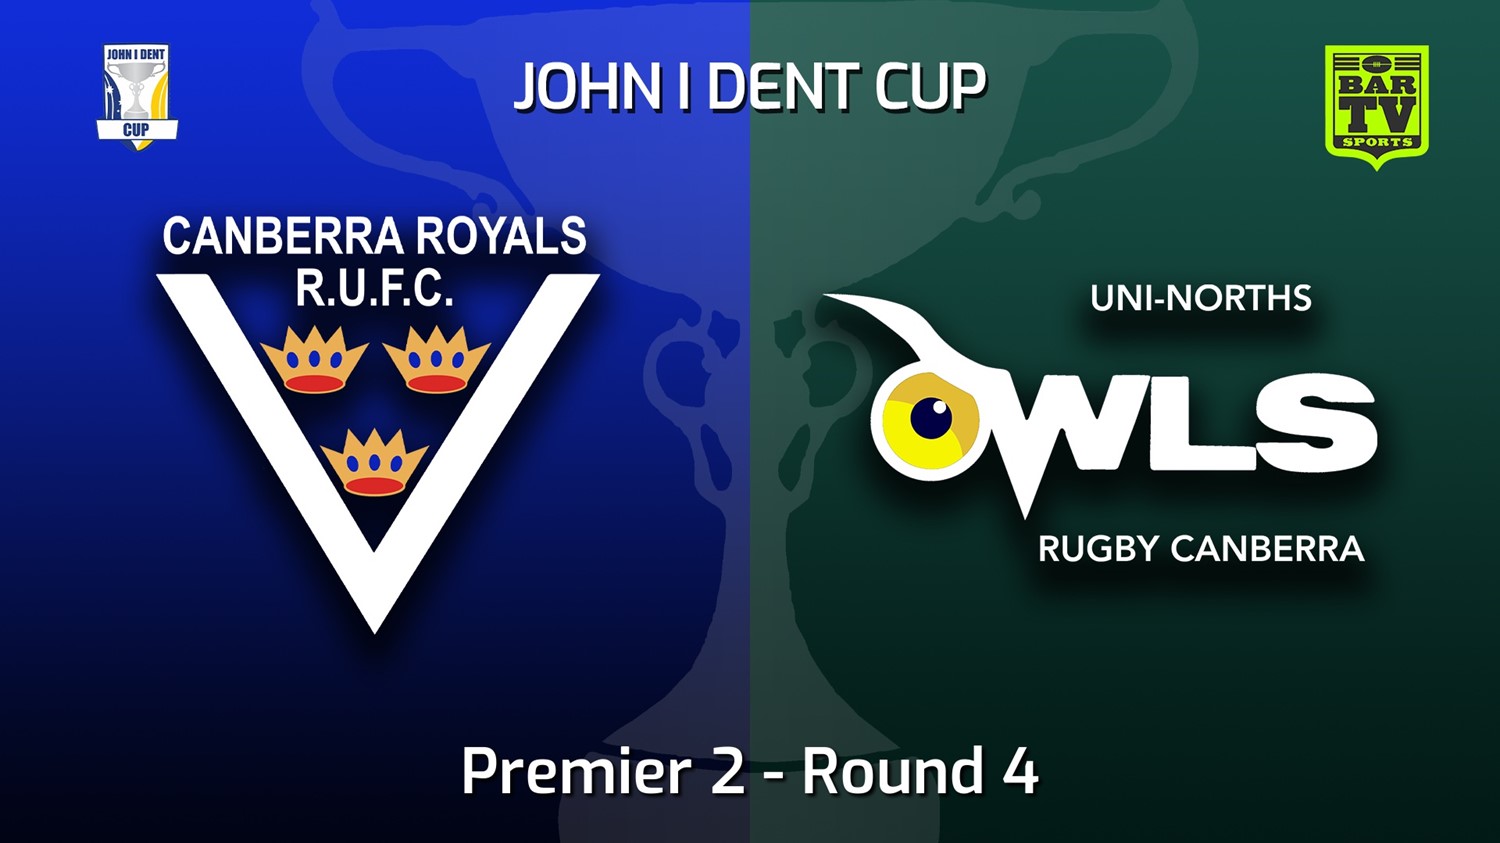 220514-John I Dent (ACT) Round 4 - Premier 2 - Canberra Royals v UNI-Norths Slate Image